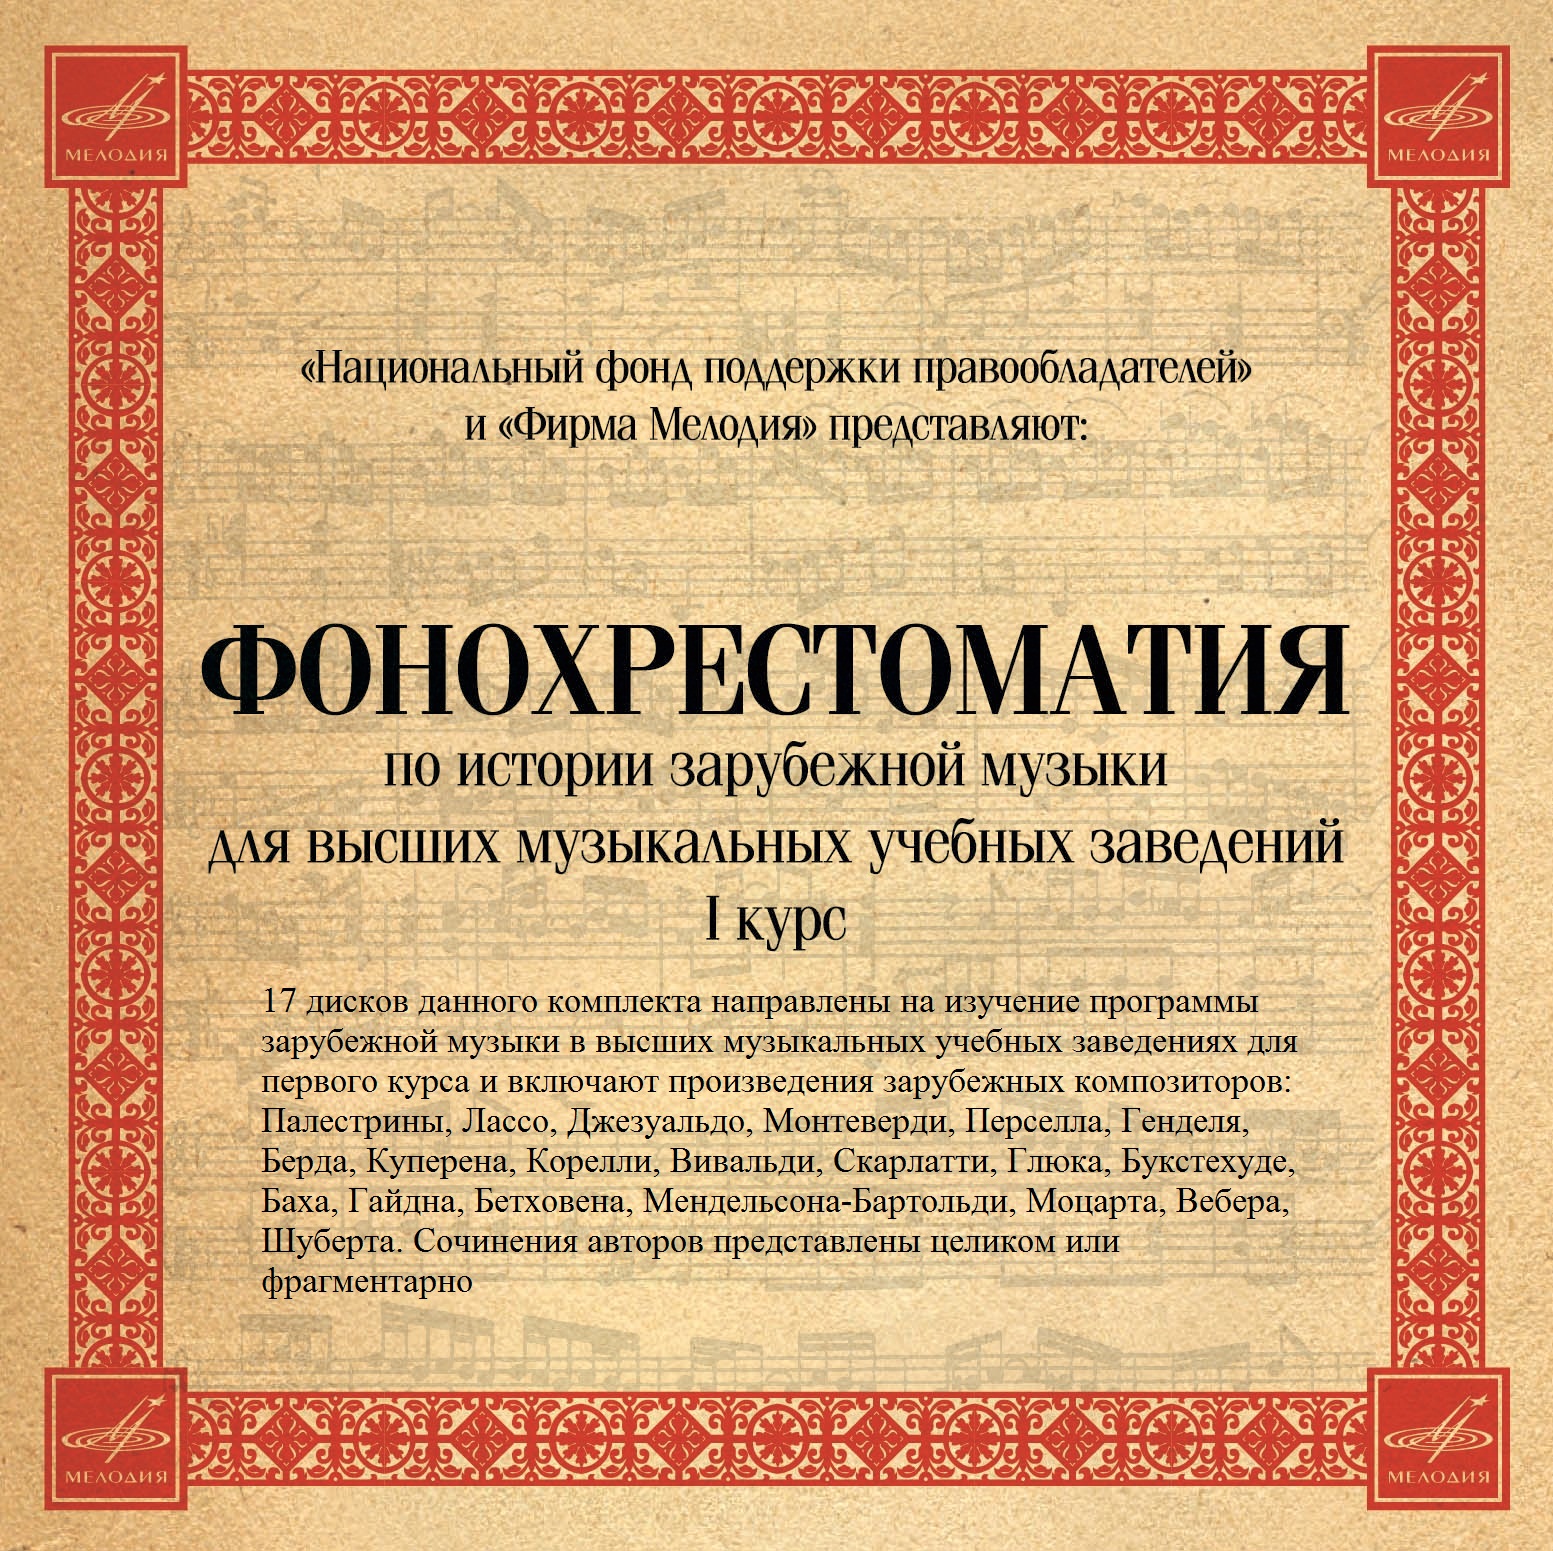 Фонд передал «Фонохрестоматию по русской музыкальной литературе» на Северный Кавказ